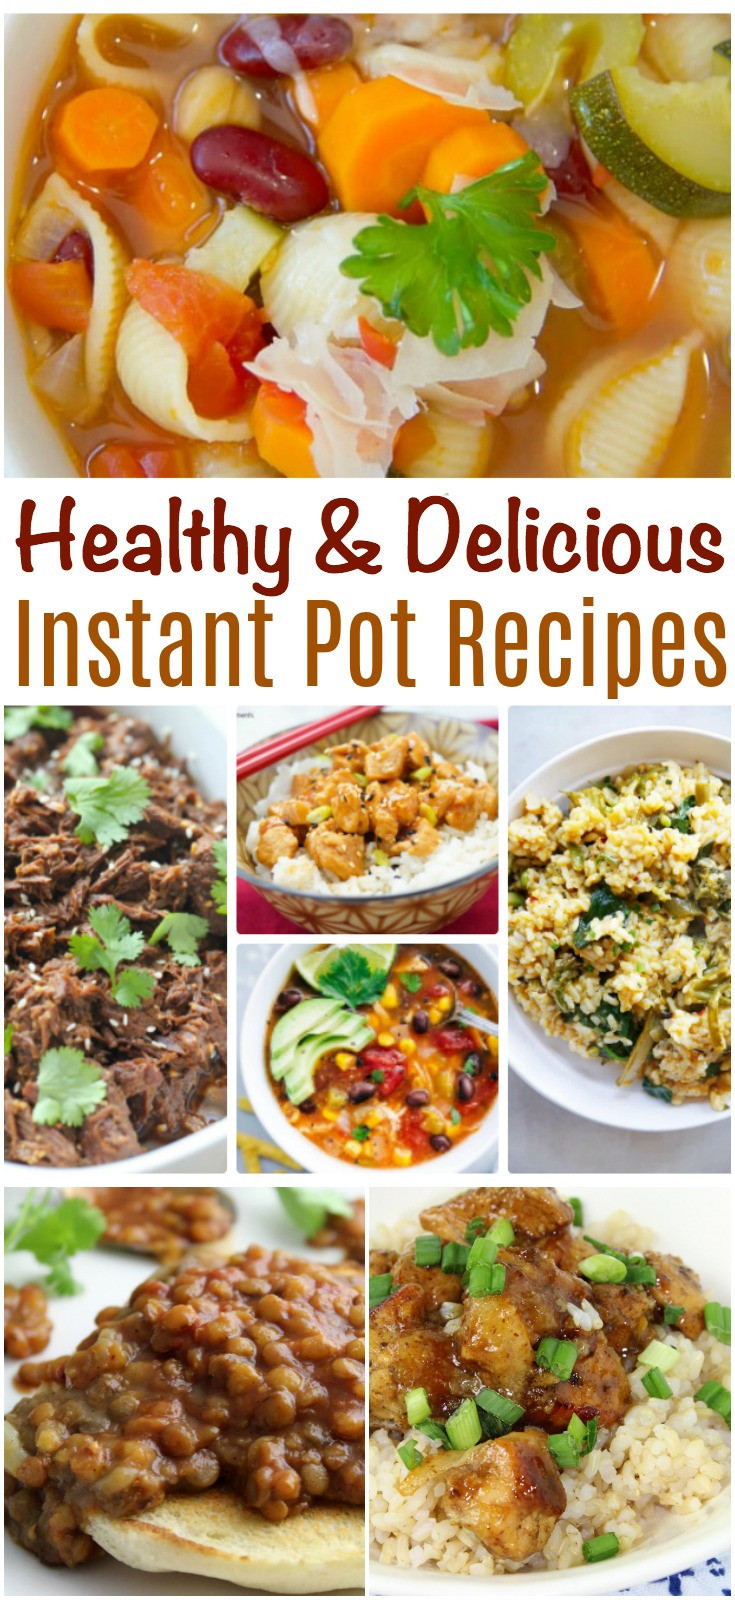 Instant Pot Recipes Healthy
 Healthy and Delicious Instant Pot Recipes